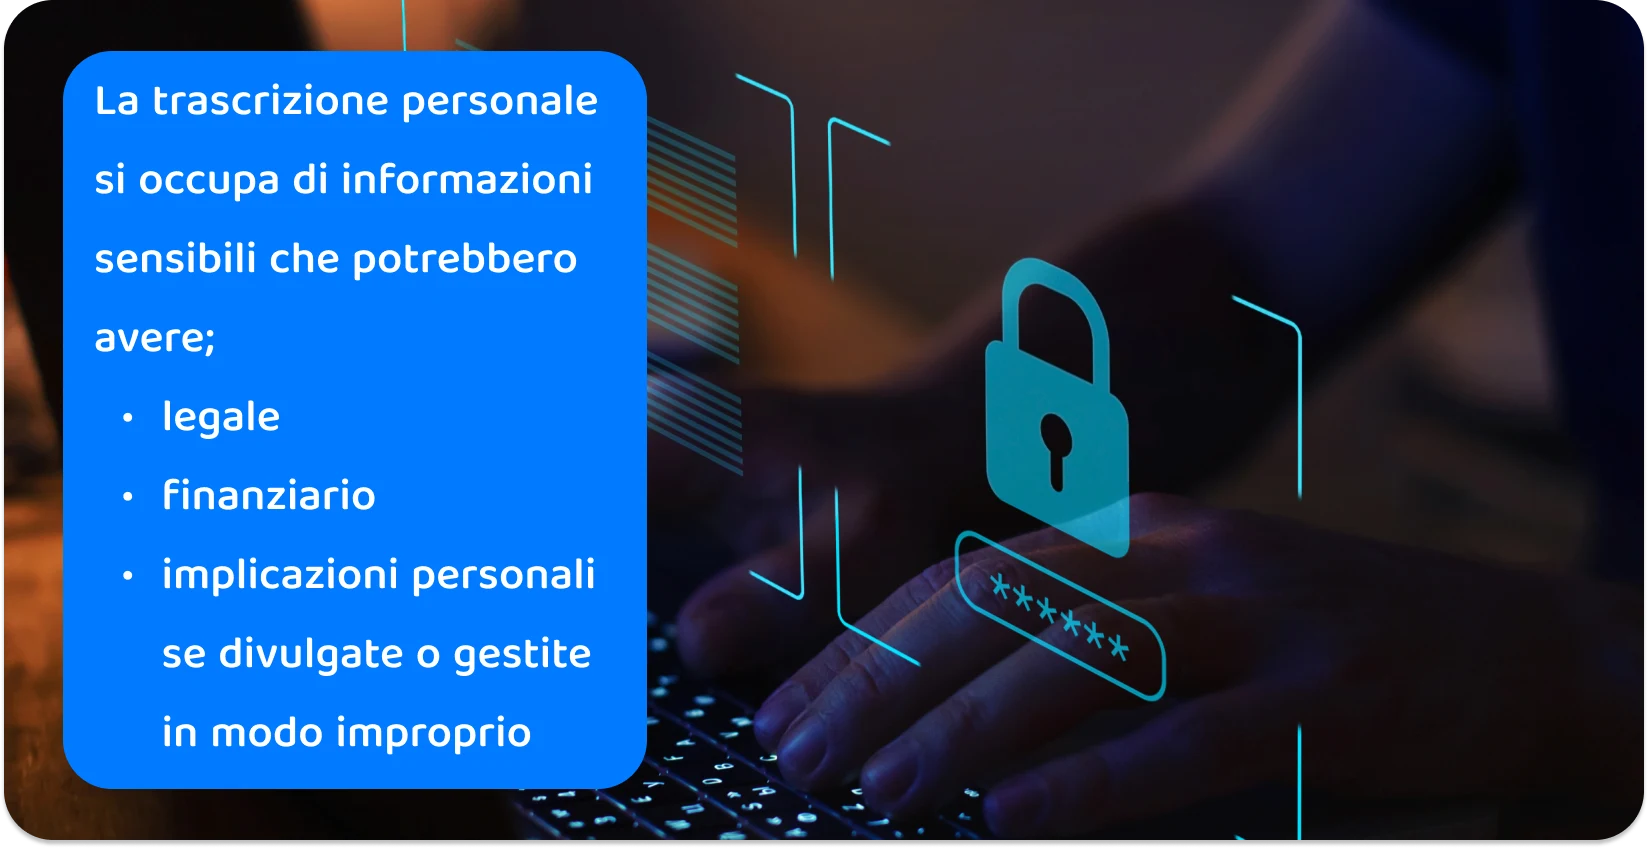 Mani che digitano su una tastiera con l'icona di un lucchetto digitale, che illustra le pratiche di trascrizione personale sicura per le informazioni sensibili.